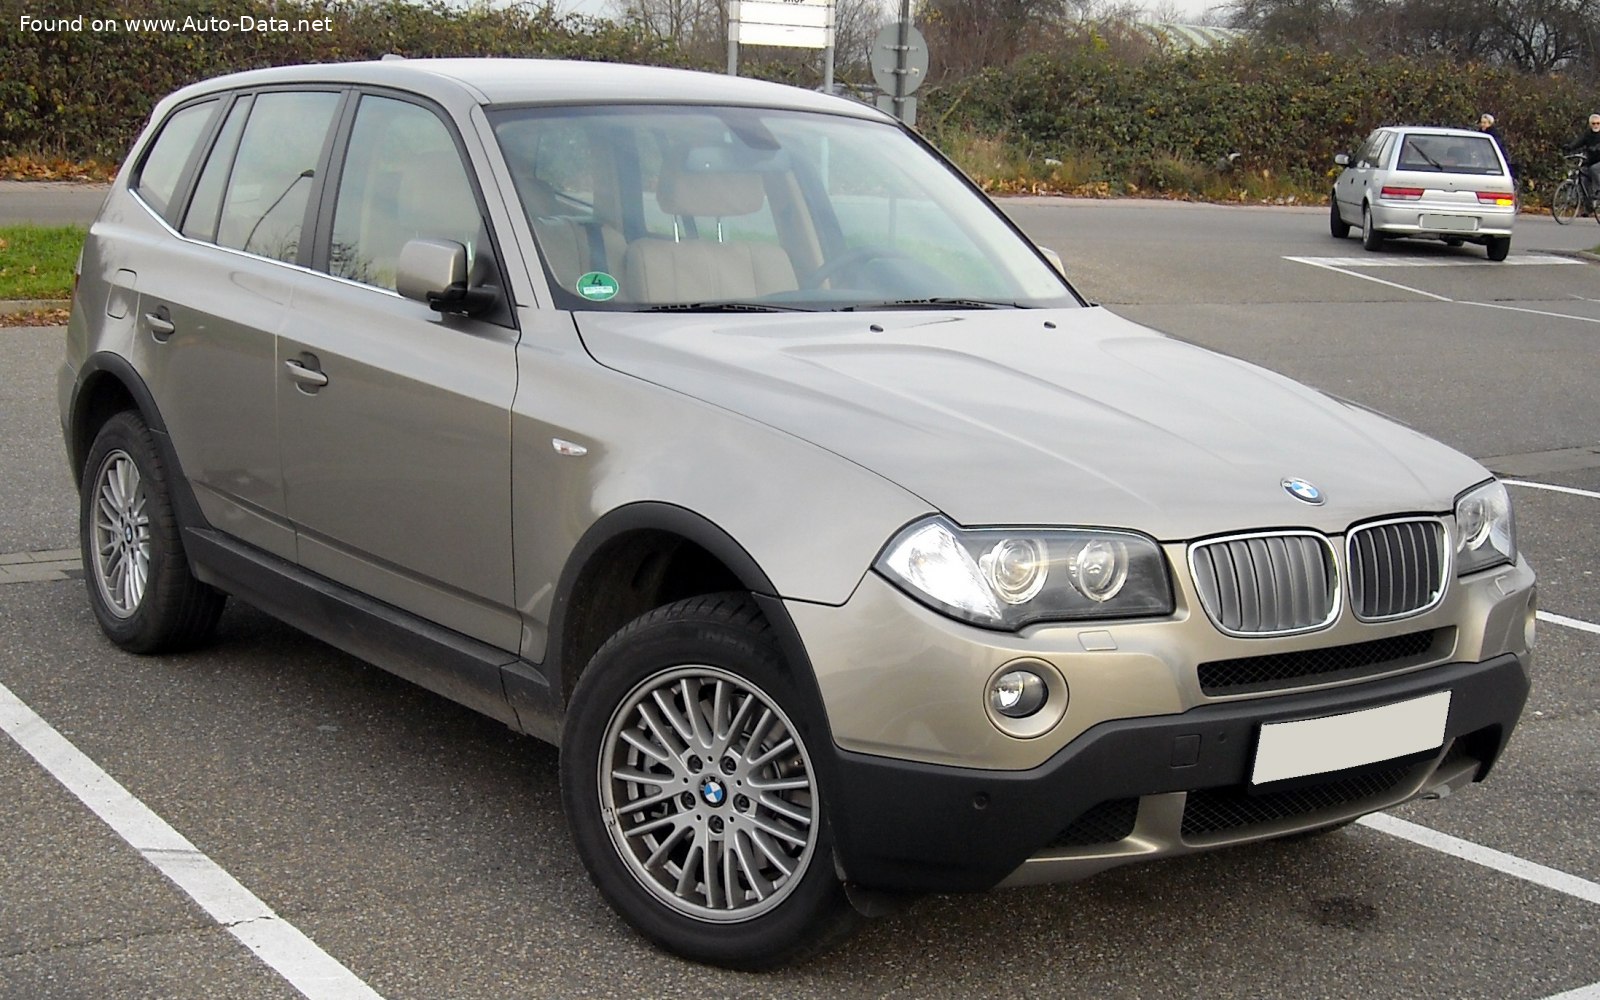 2006 BMW X3 (E83, facelift 2006) 2.5si (218 Hp)